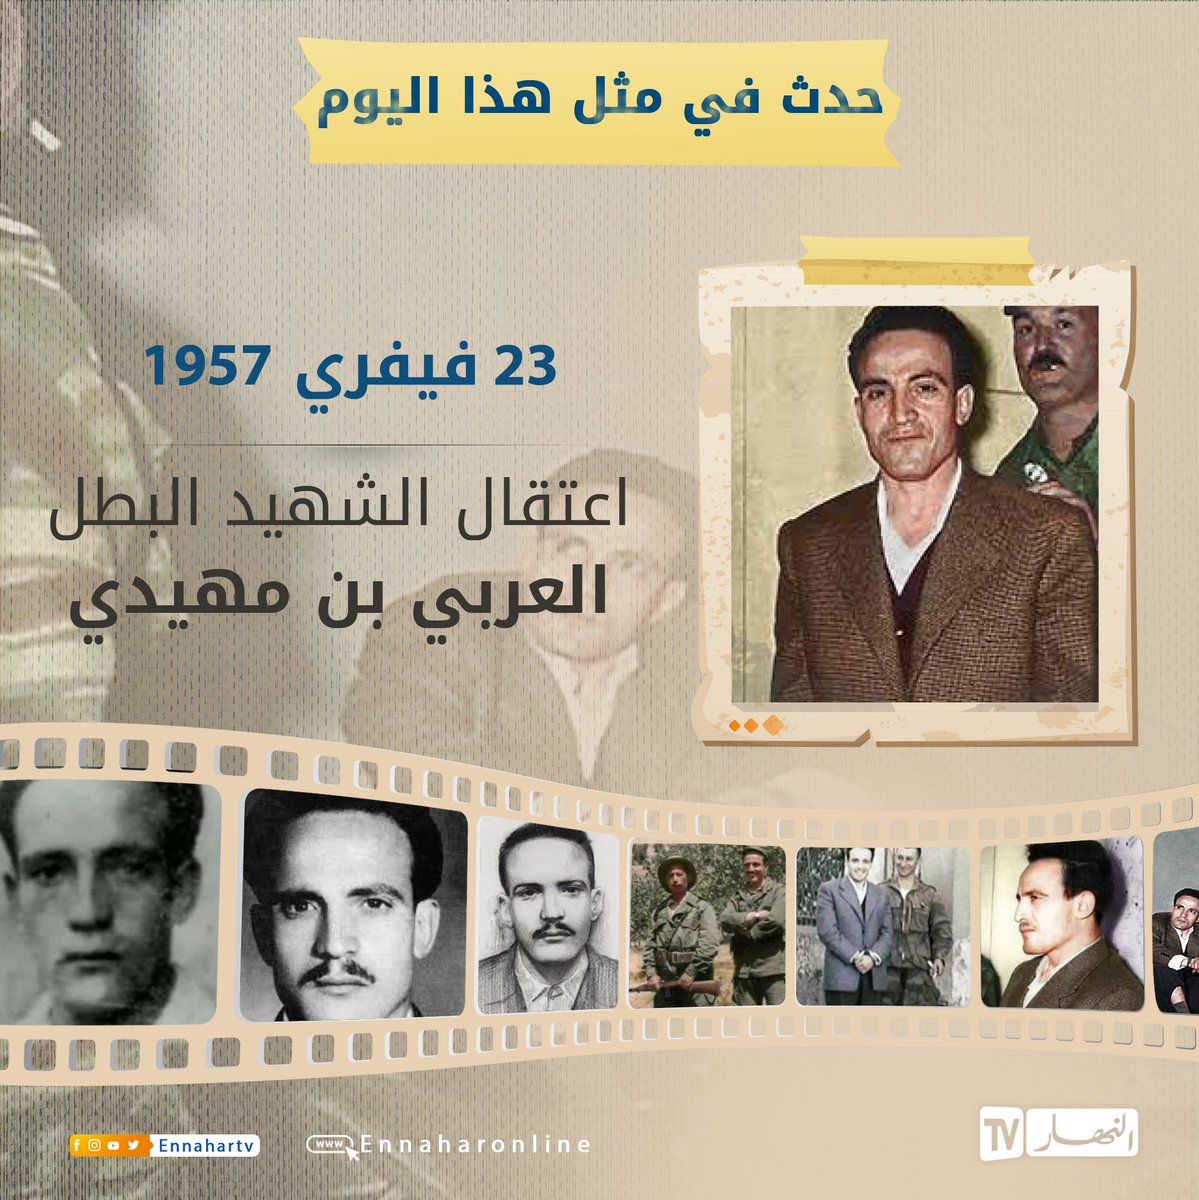 حدث في هذا اليوم... 23 فيفري 1957 تم اعتقال الشهيد البطل العربي بن مهيدي 🇩🇿🇩🇿